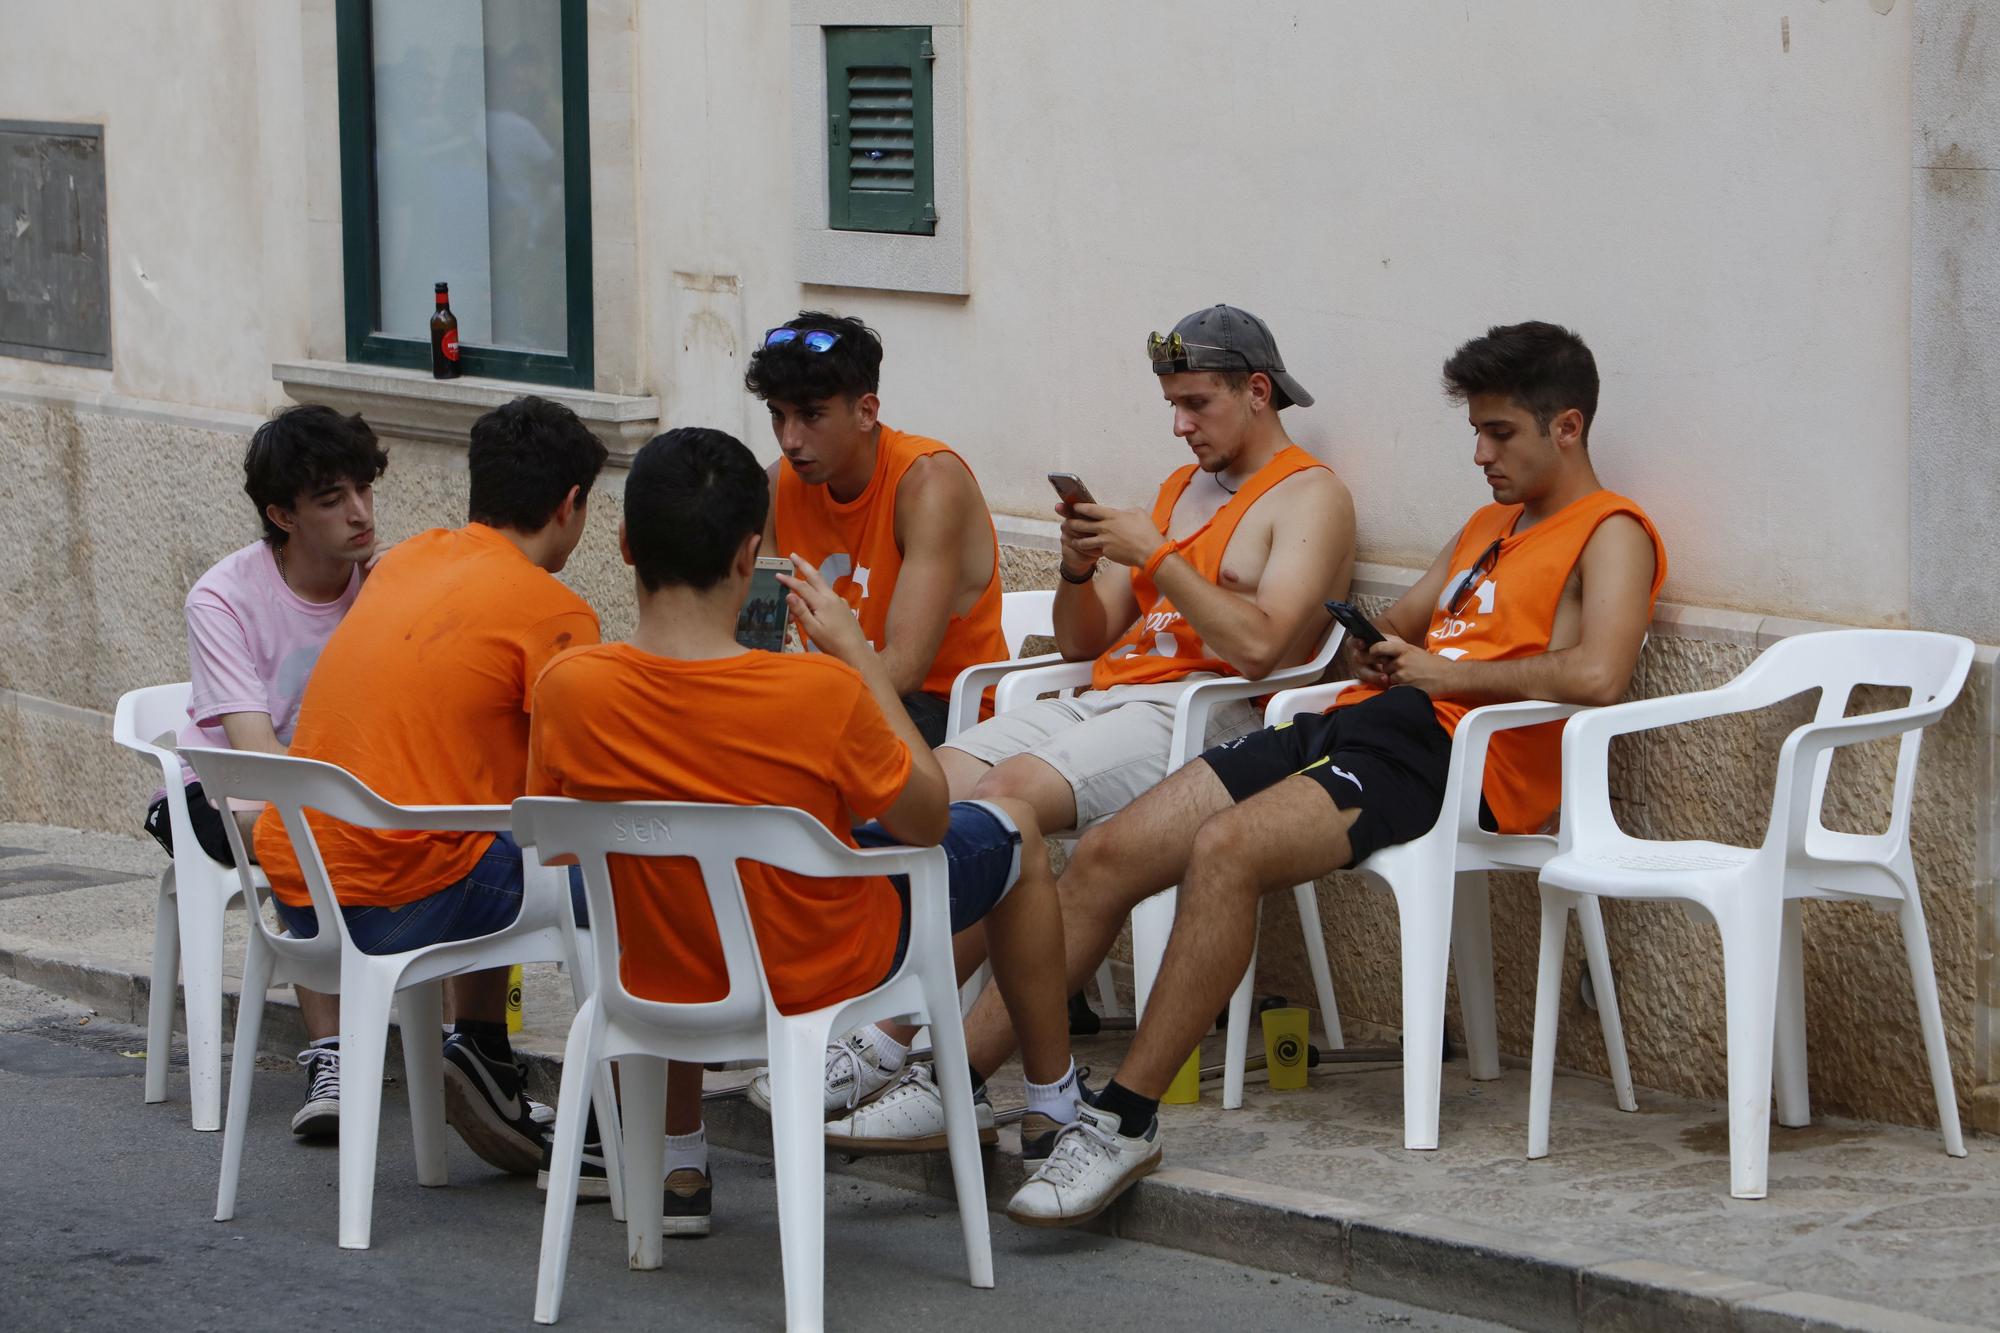 Schöner Brauch: So machen auf Mallorca mehrere Generationen gemeinsam Party